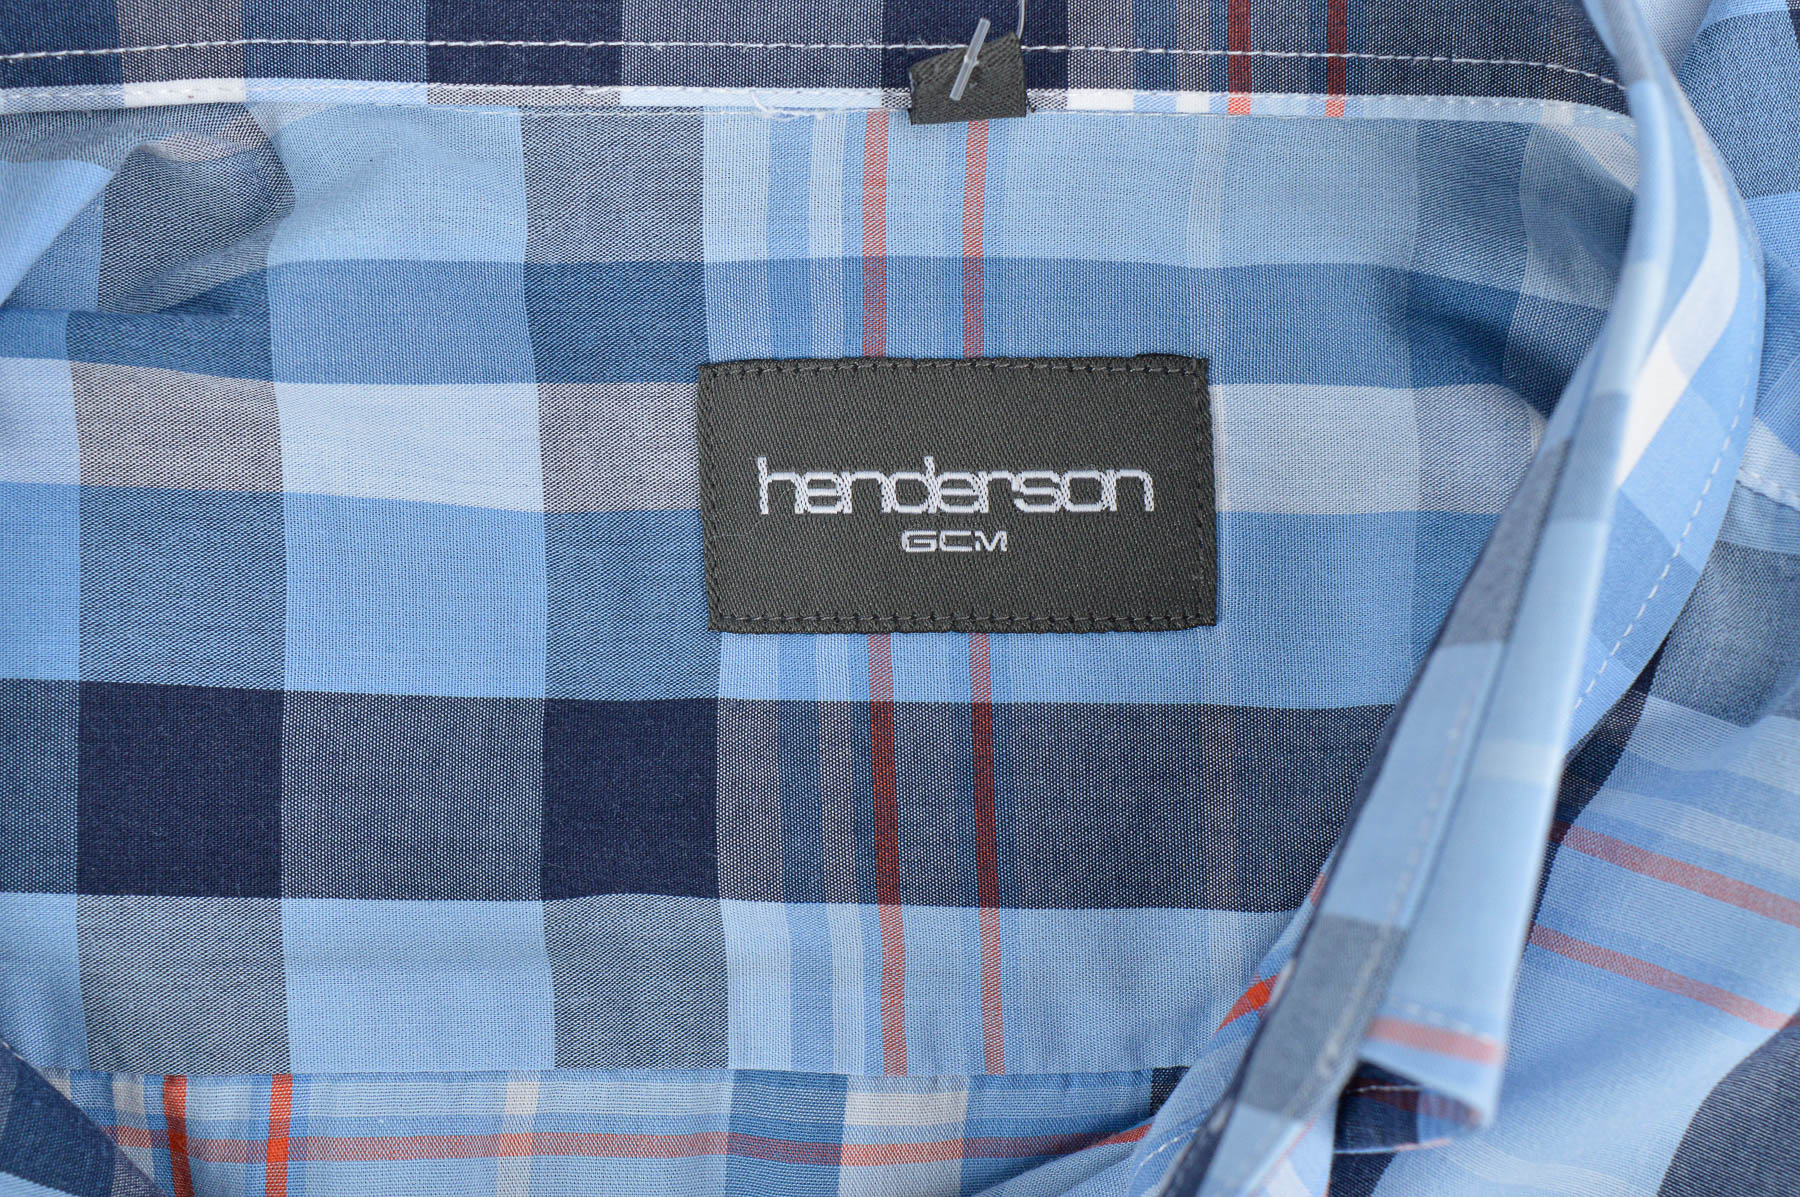 Men's shirt - Henderson - 2